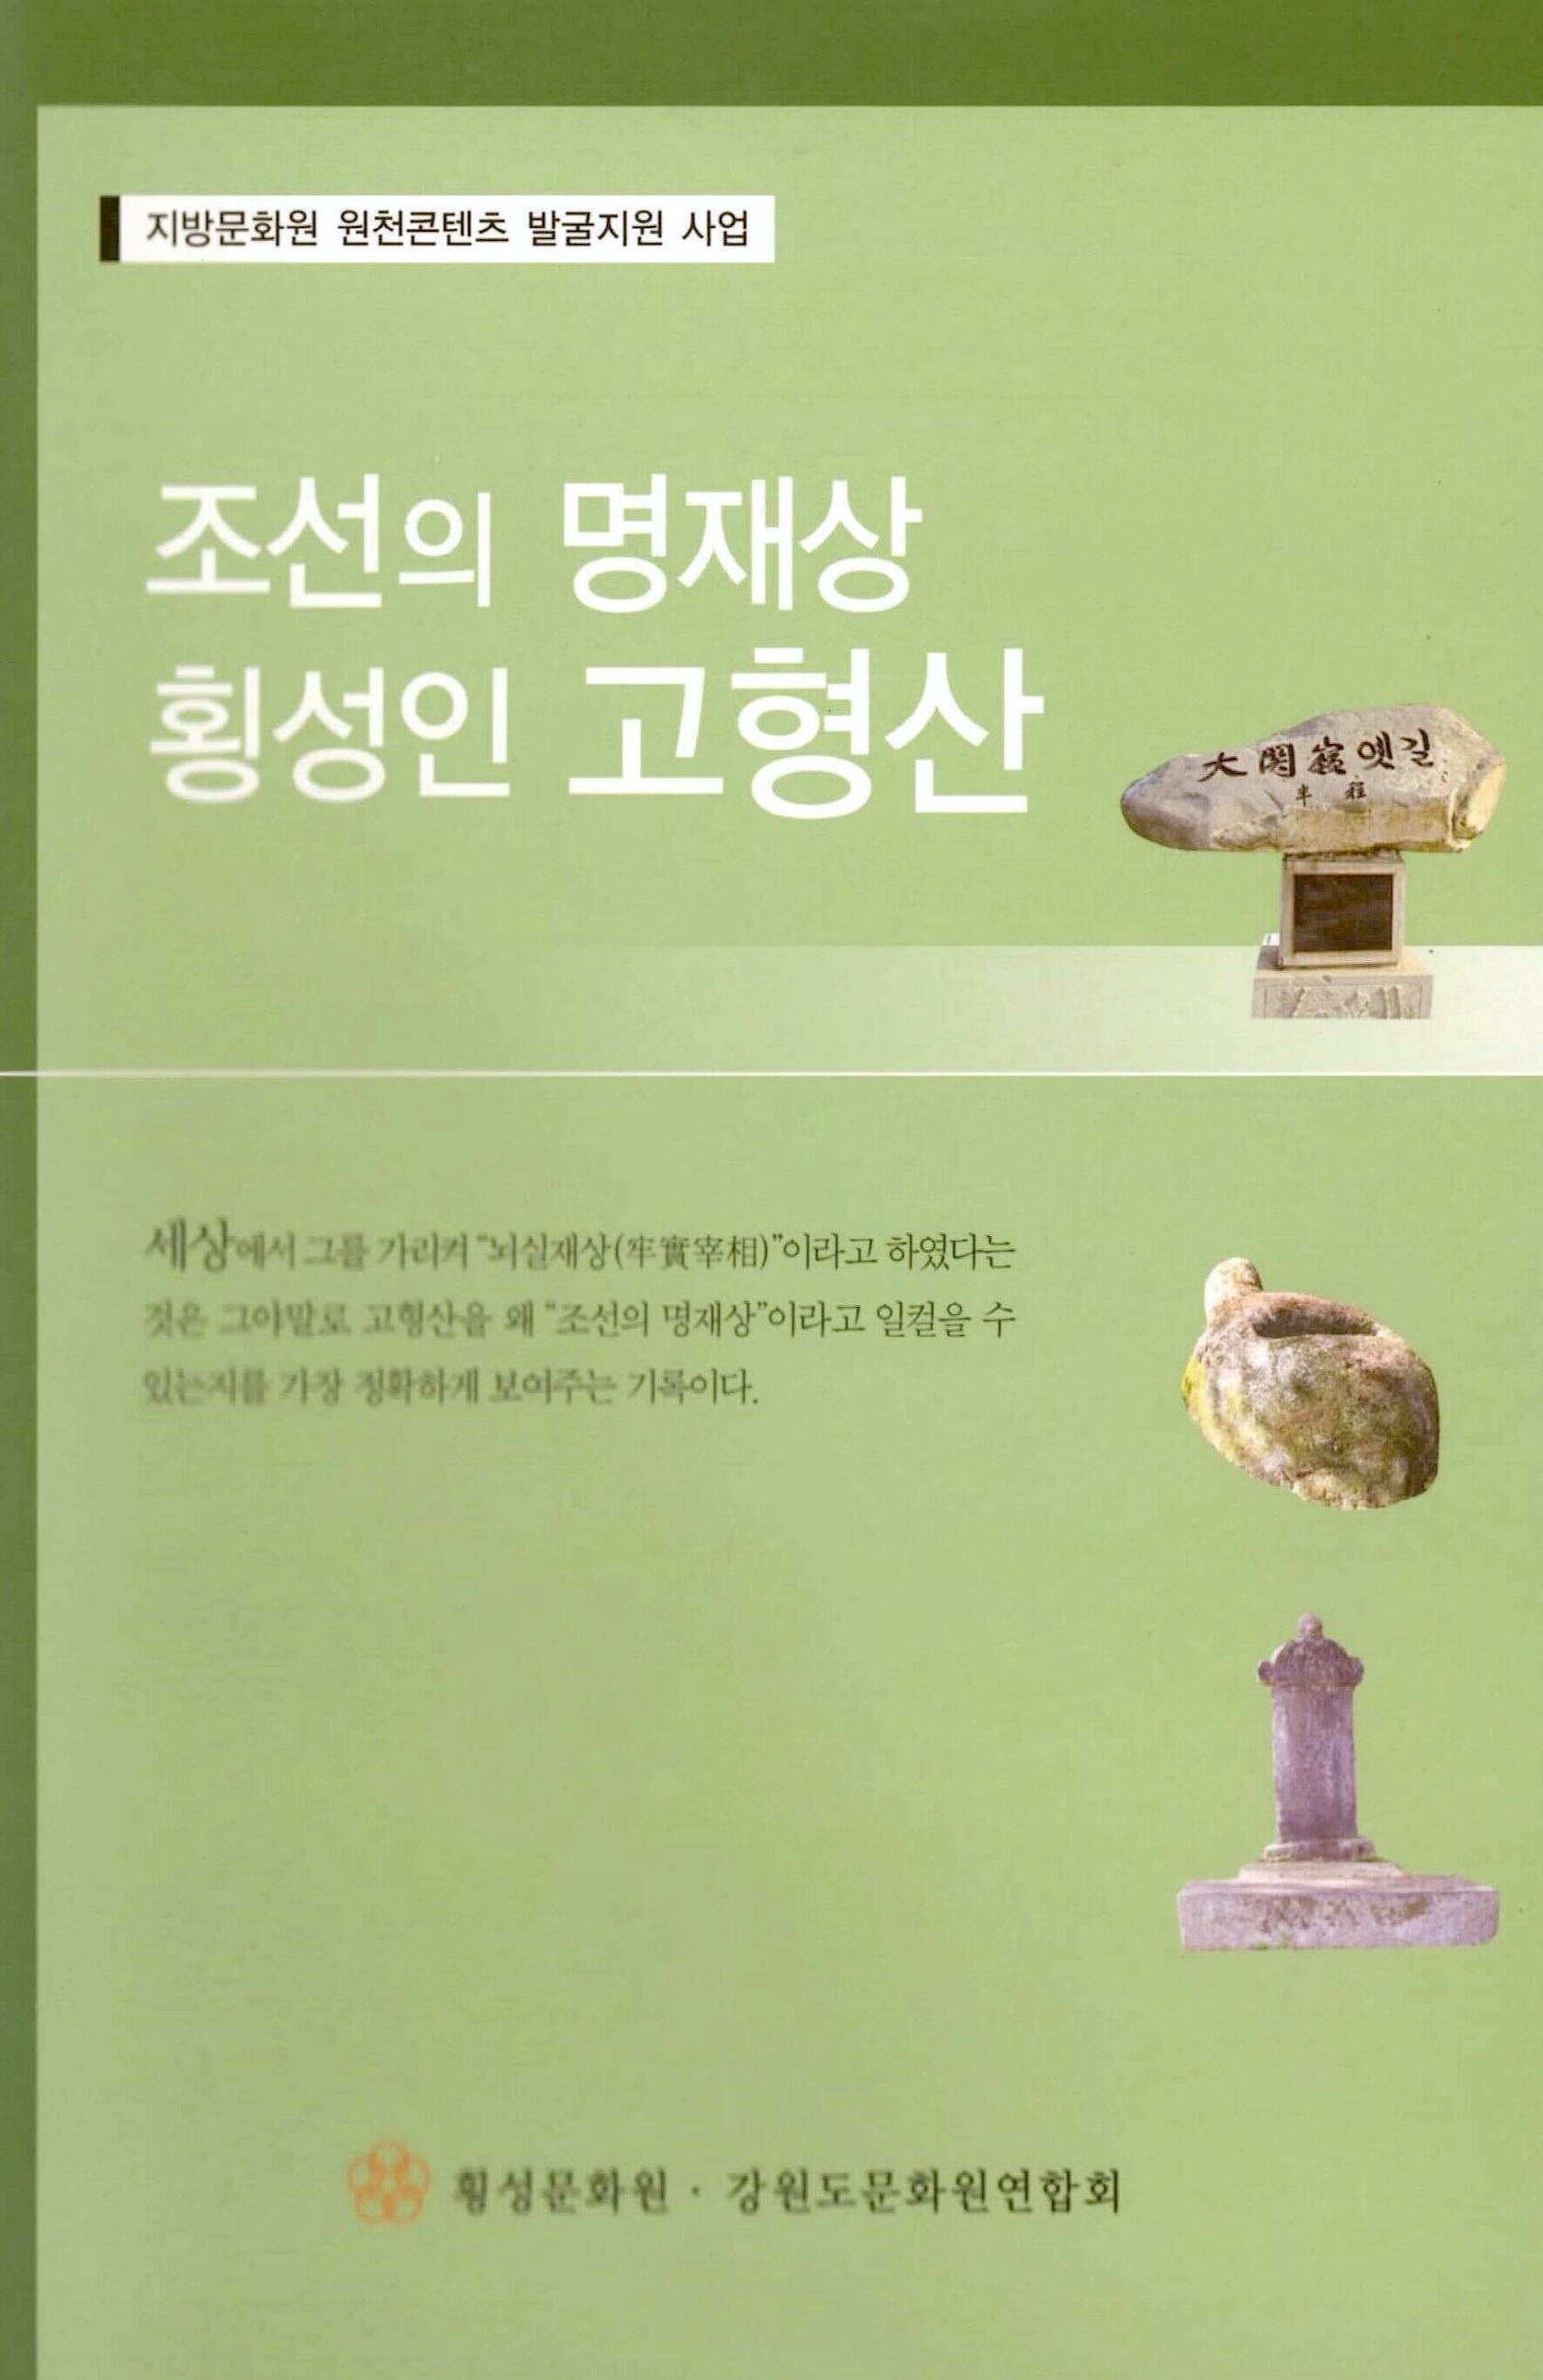 지방문화원 원천콘텐츠 발굴지원 사업 조선의 명재상 횡성인 고형산